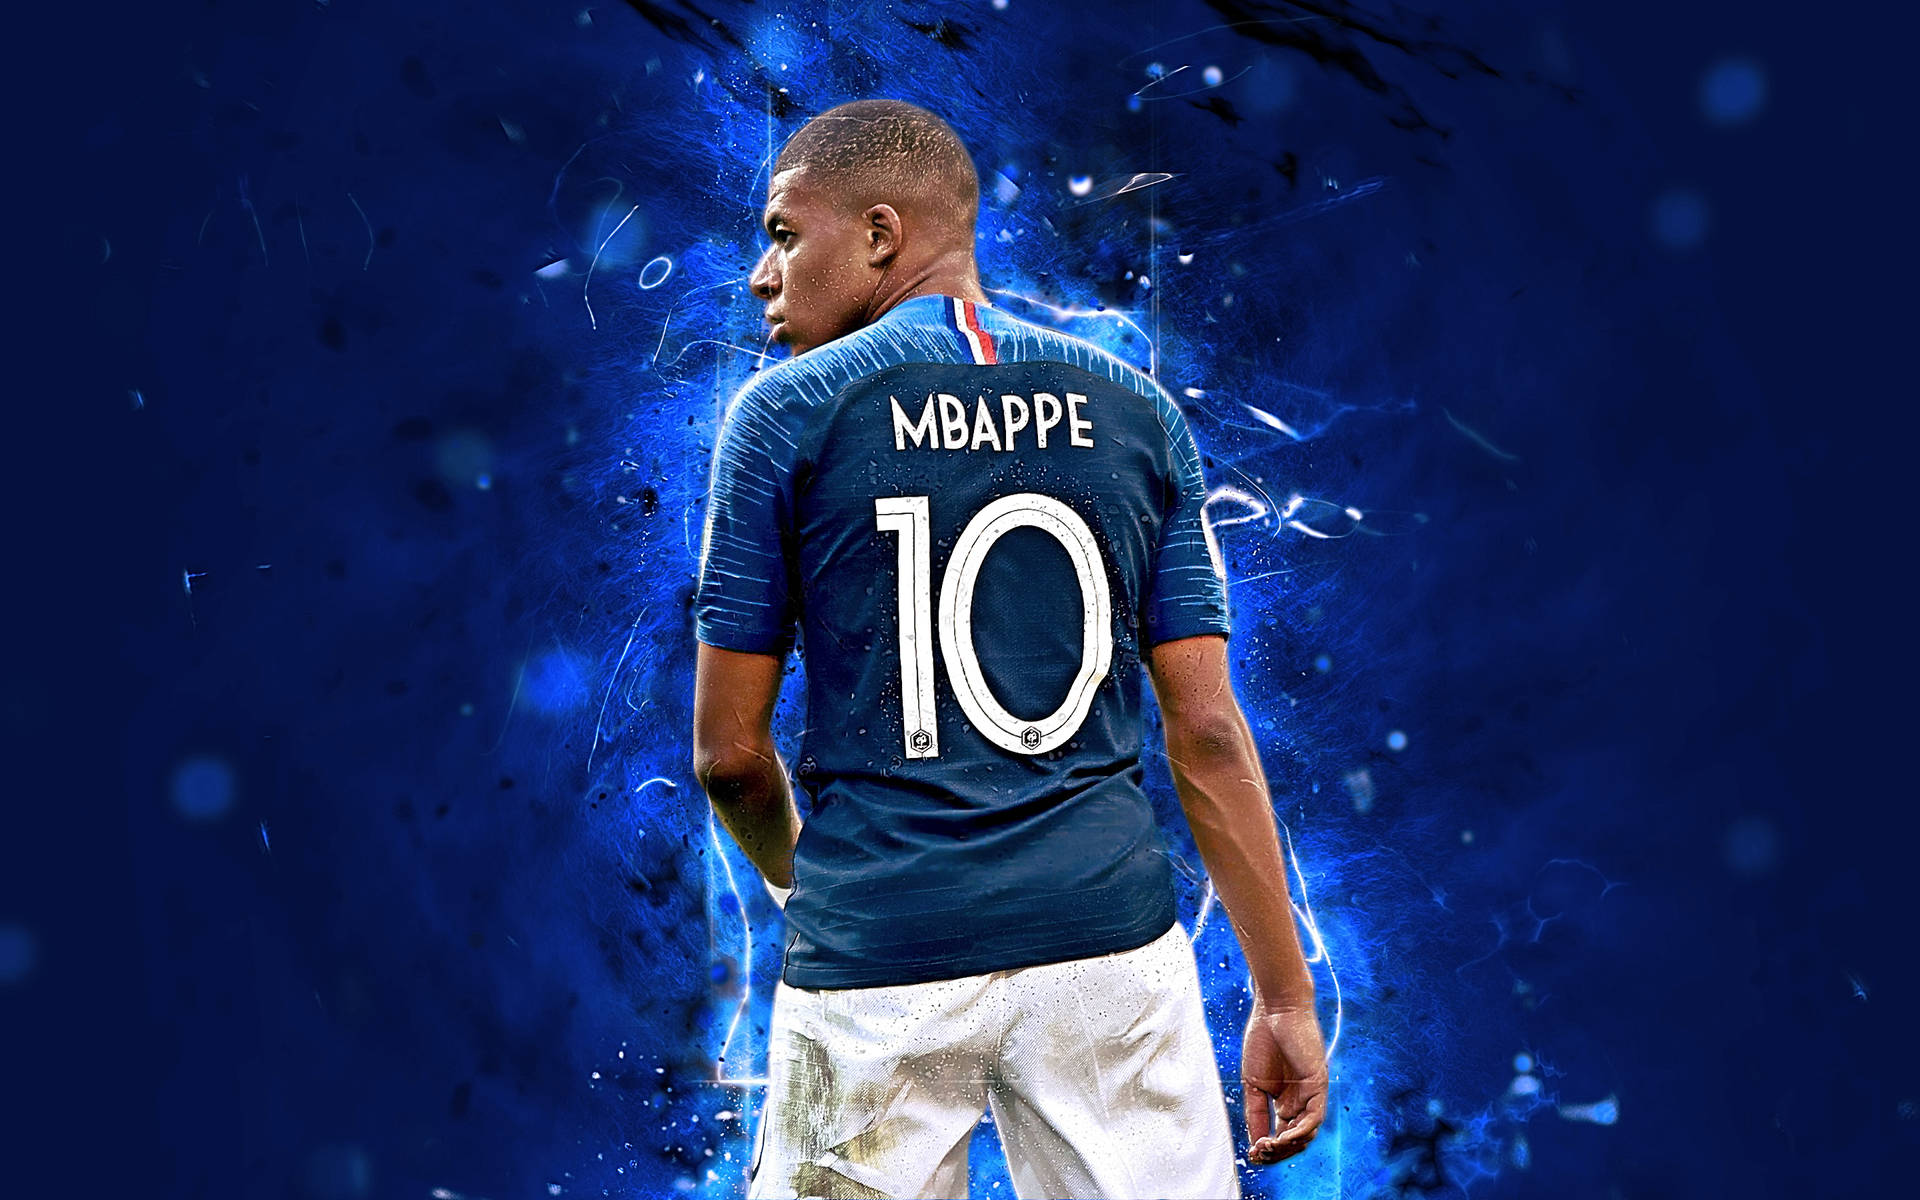 Number 10 Blue Jersey Mbappe Fanart Background